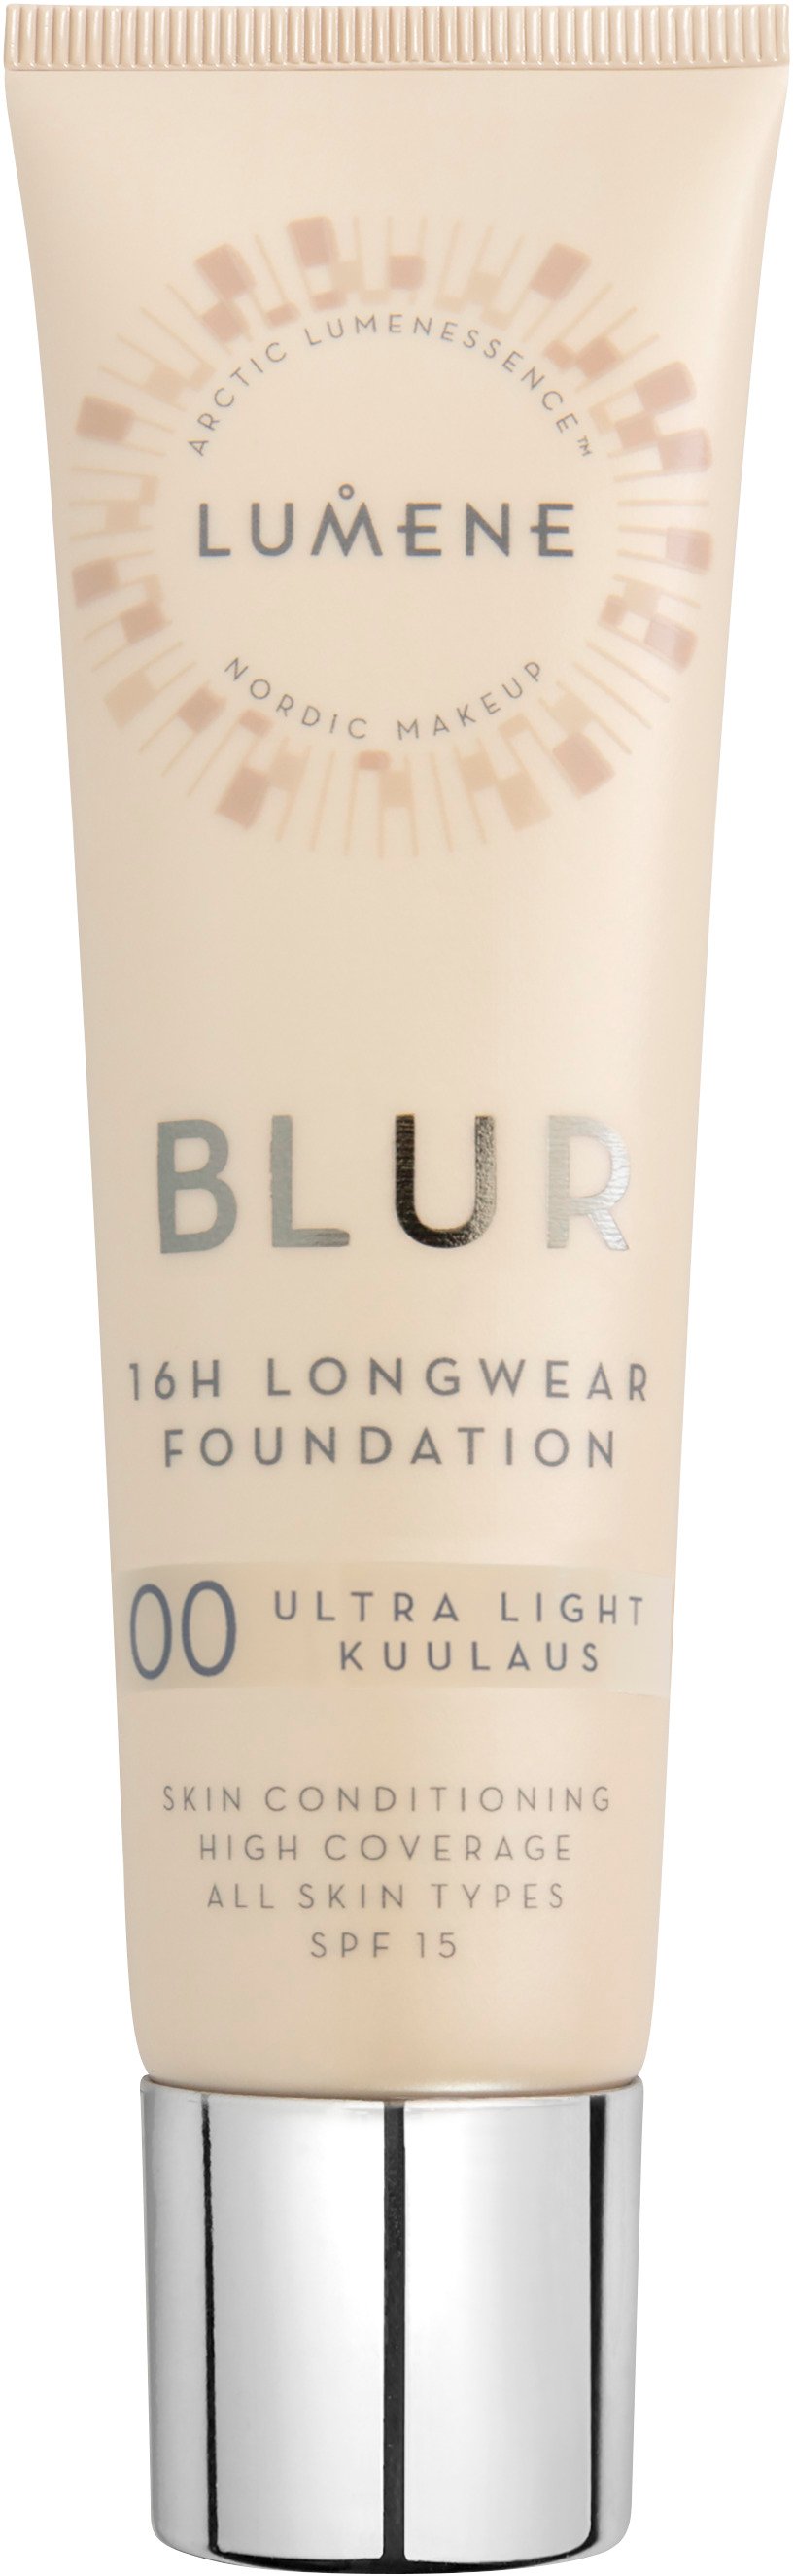 Lumene Blur 16h Longwear Foundation 00 30 ml